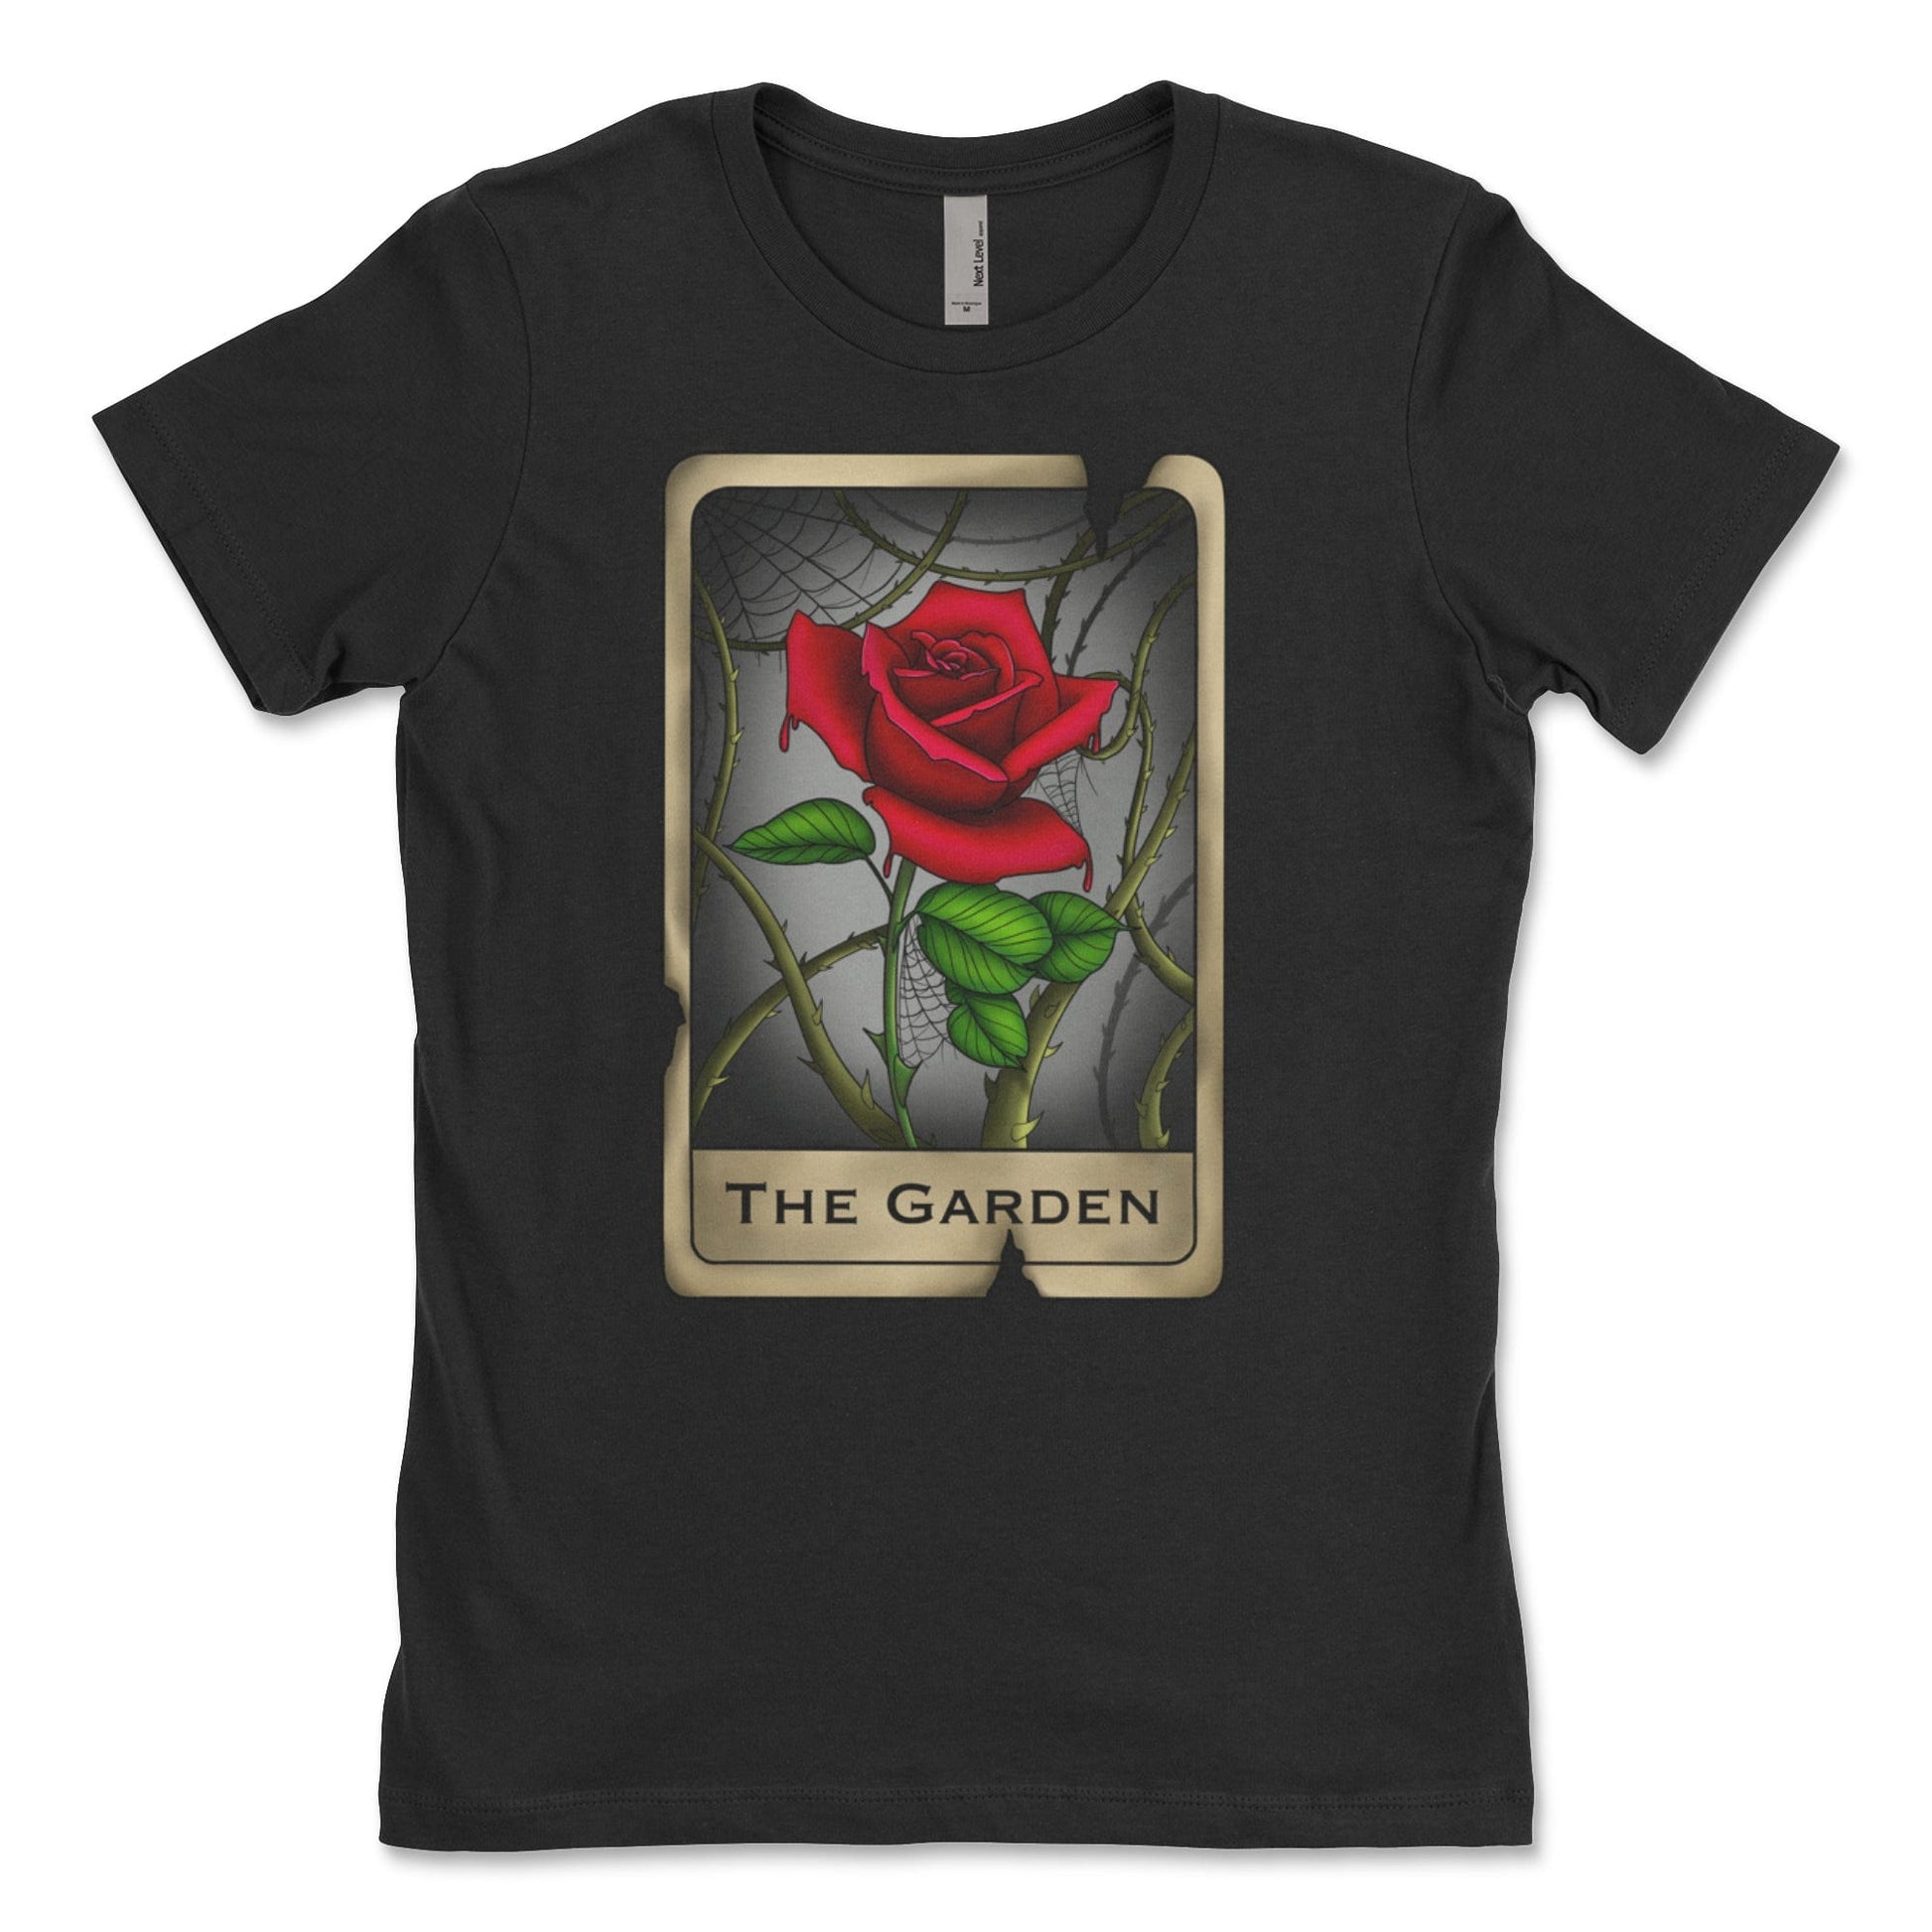 Legendary ltd. T SHIRT "The Garden" Rose Women's Tee by Kaylee